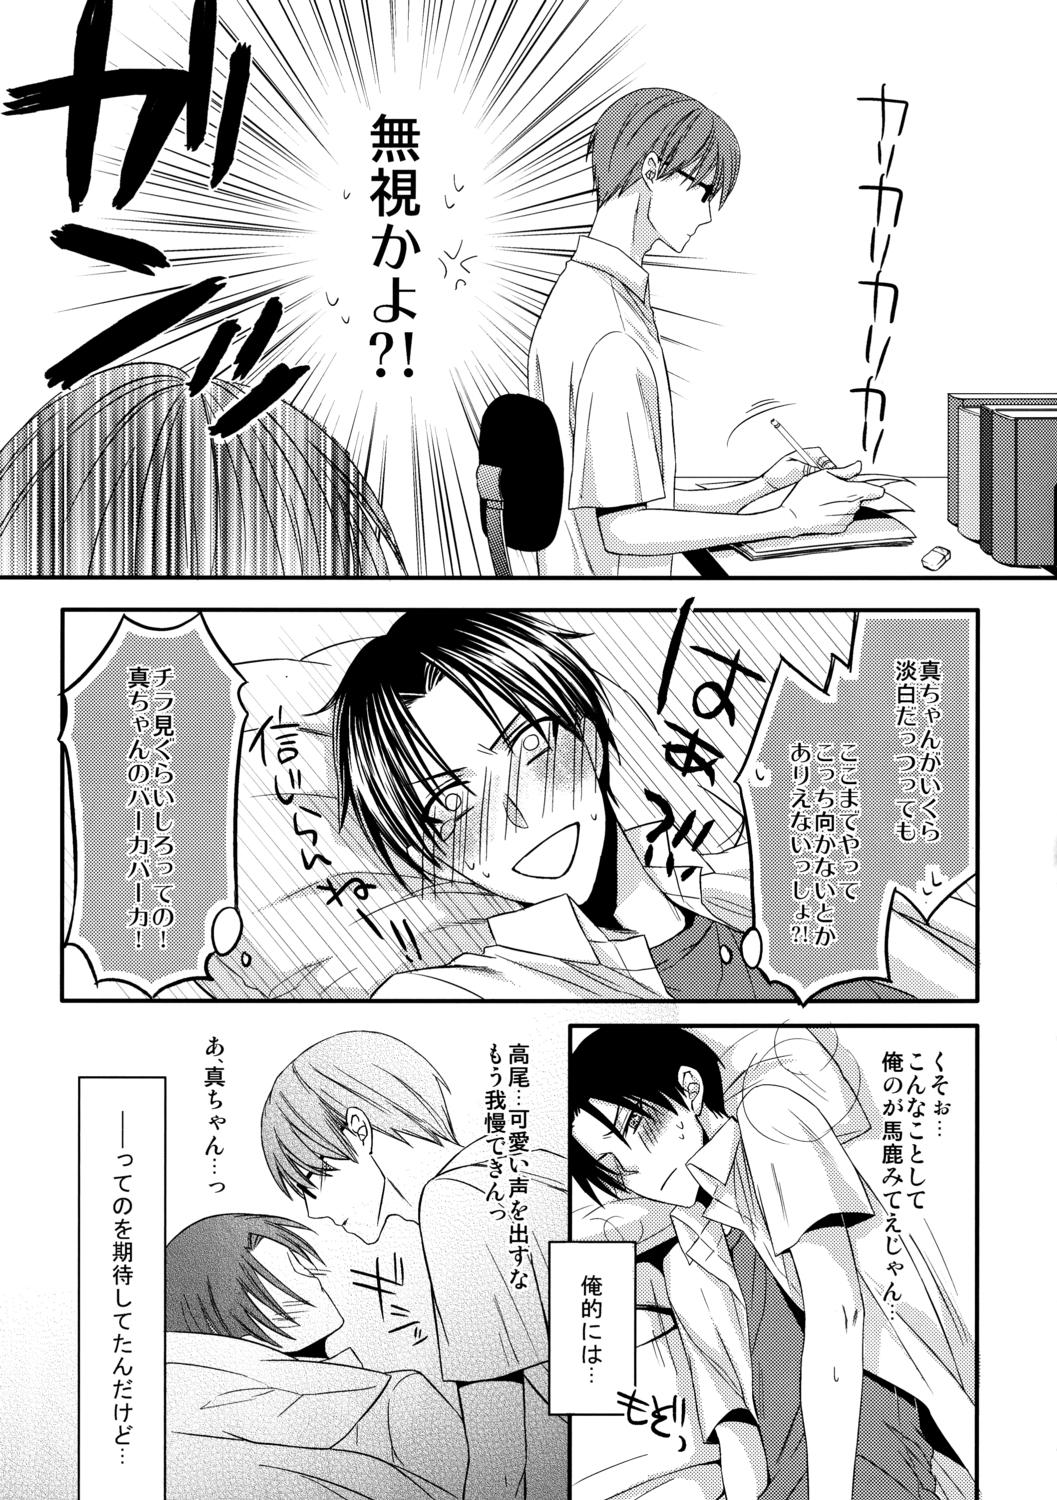 Publico Kamatte Shin-chan! - Kuroko no basuke Gays - Page 9